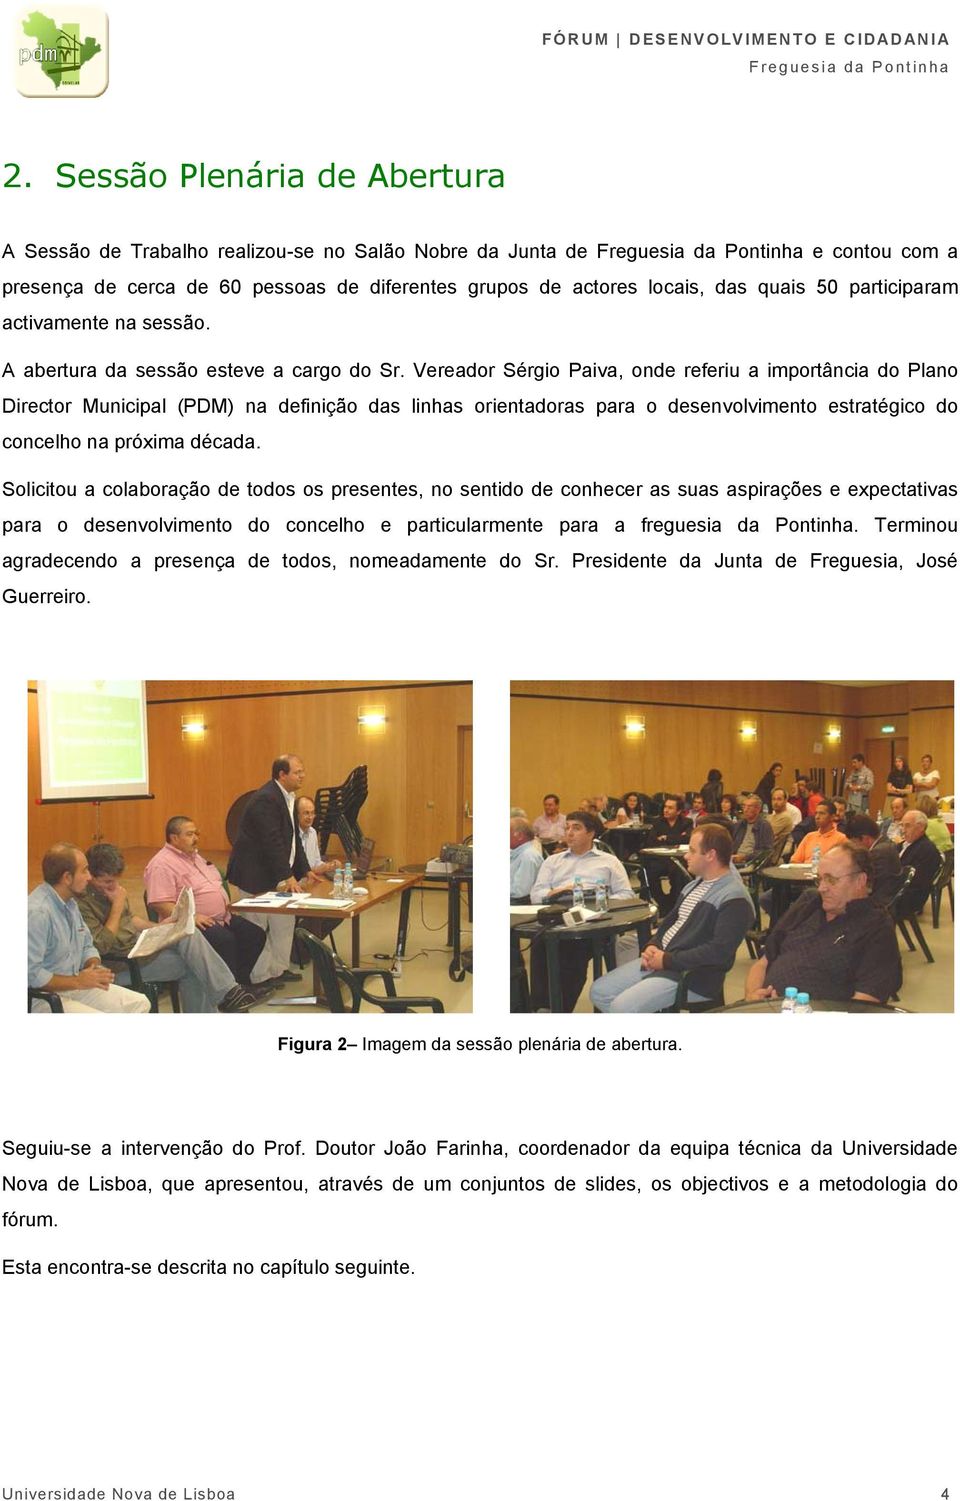 Vereador Sérgio Paiva, onde referiu a importância do Plano Director Municipal (PDM) na definição das linhas orientadoras para o desenvolvimento estratégico do concelho na próxima década.